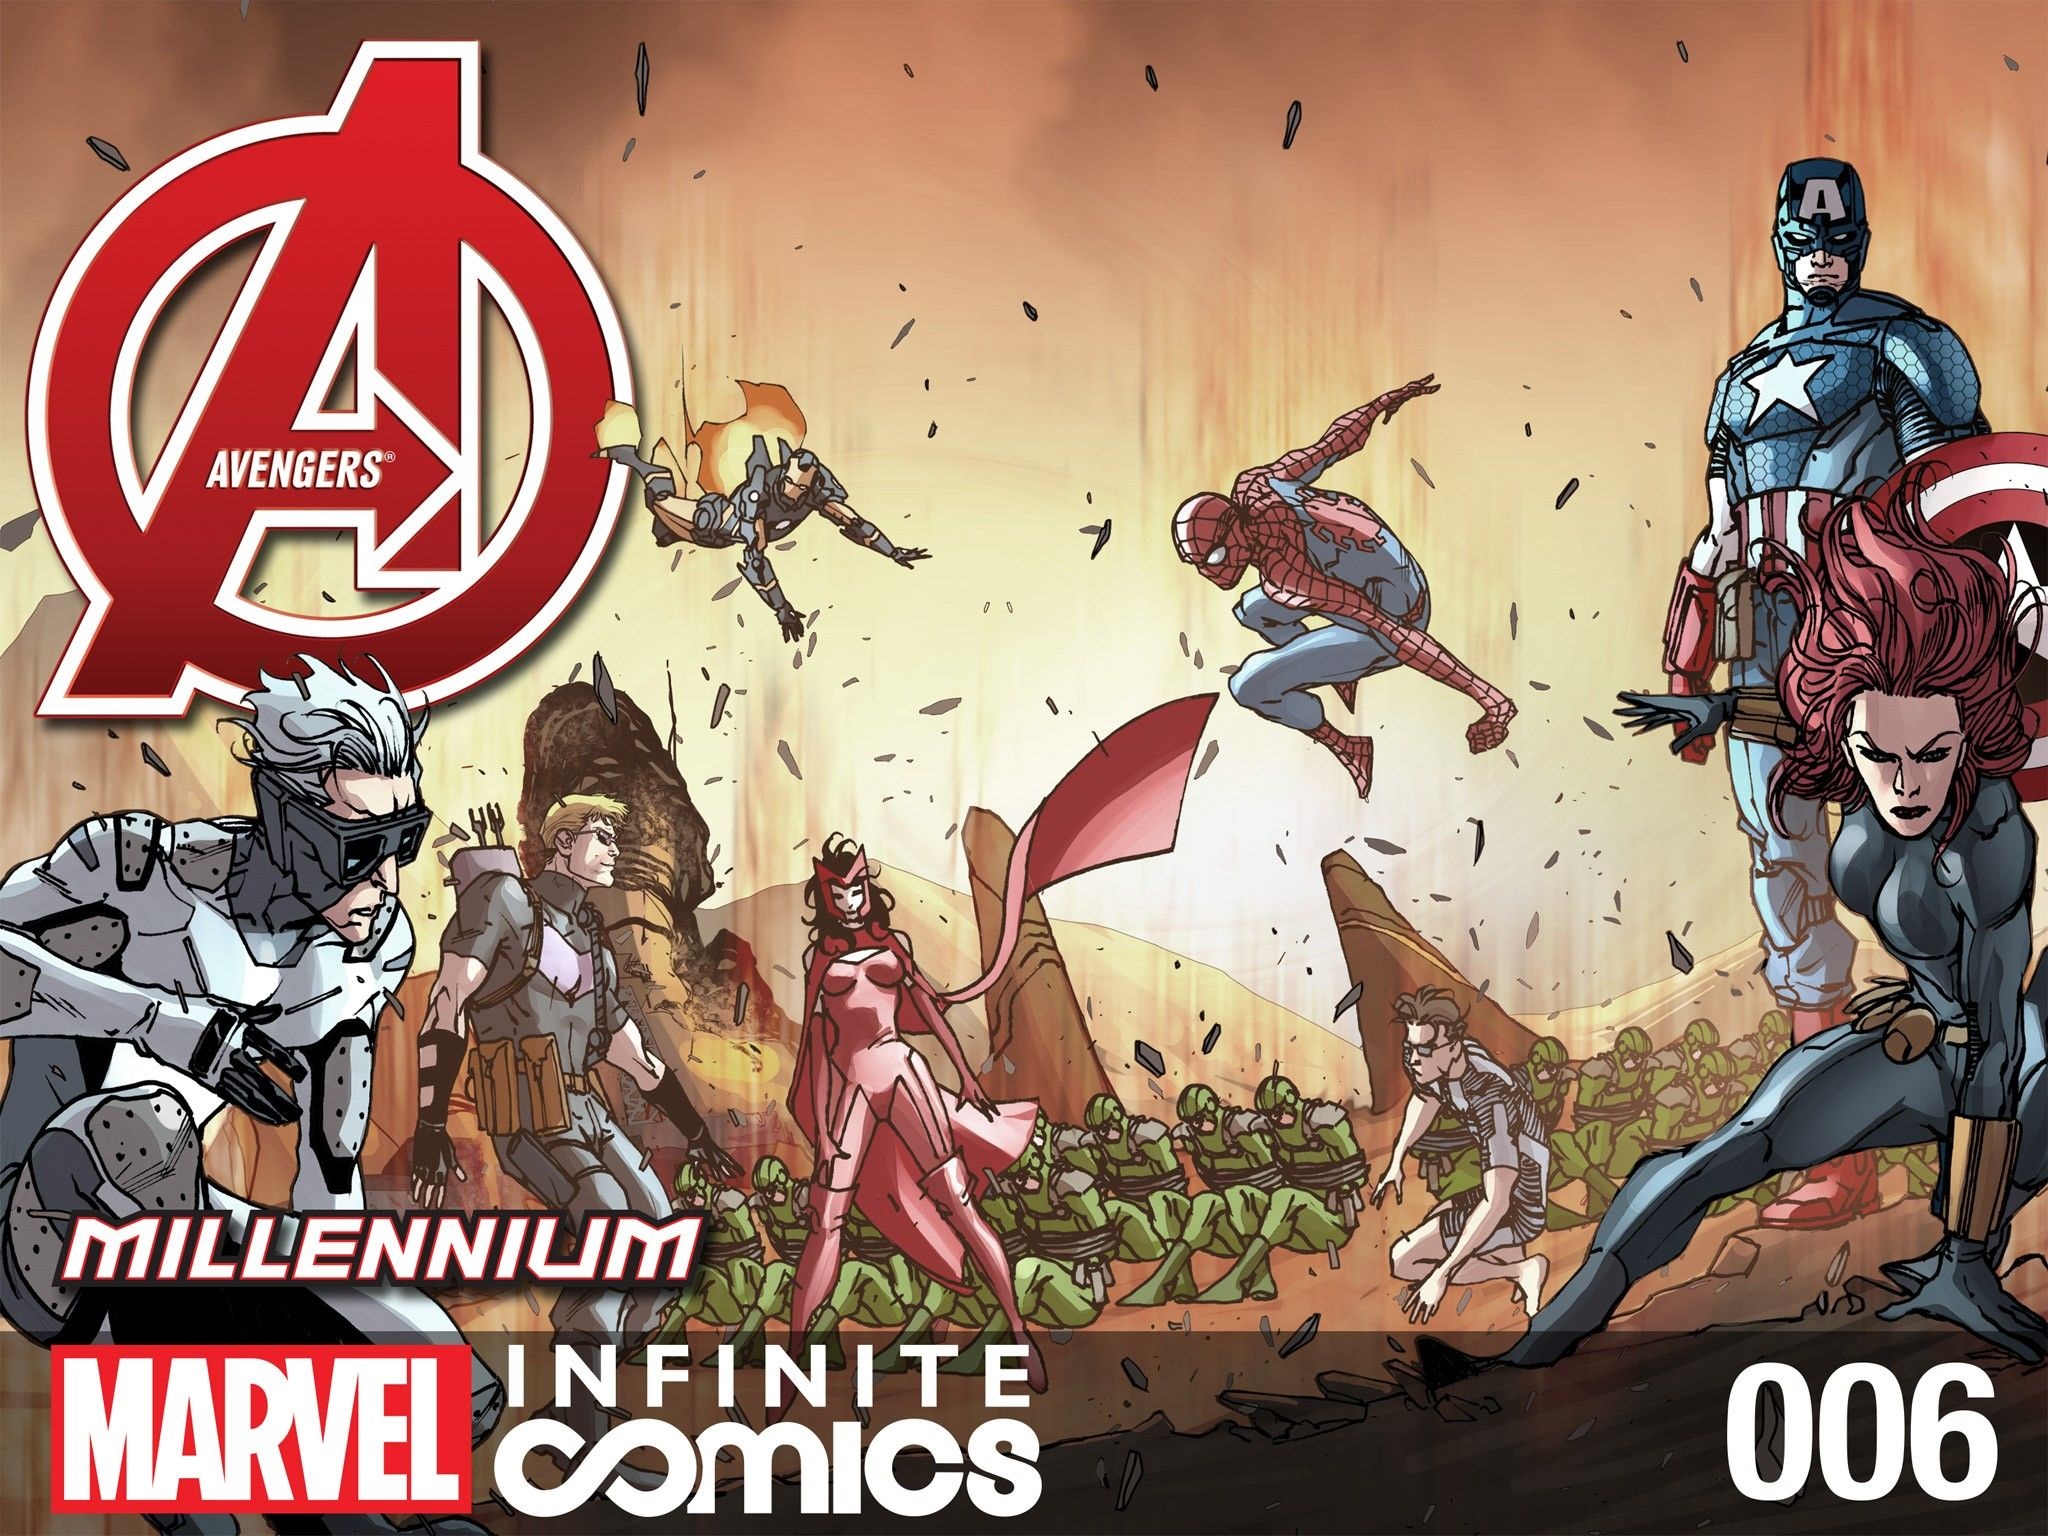 Avengers: Millennium Infinite Comic Vol. 1 #6